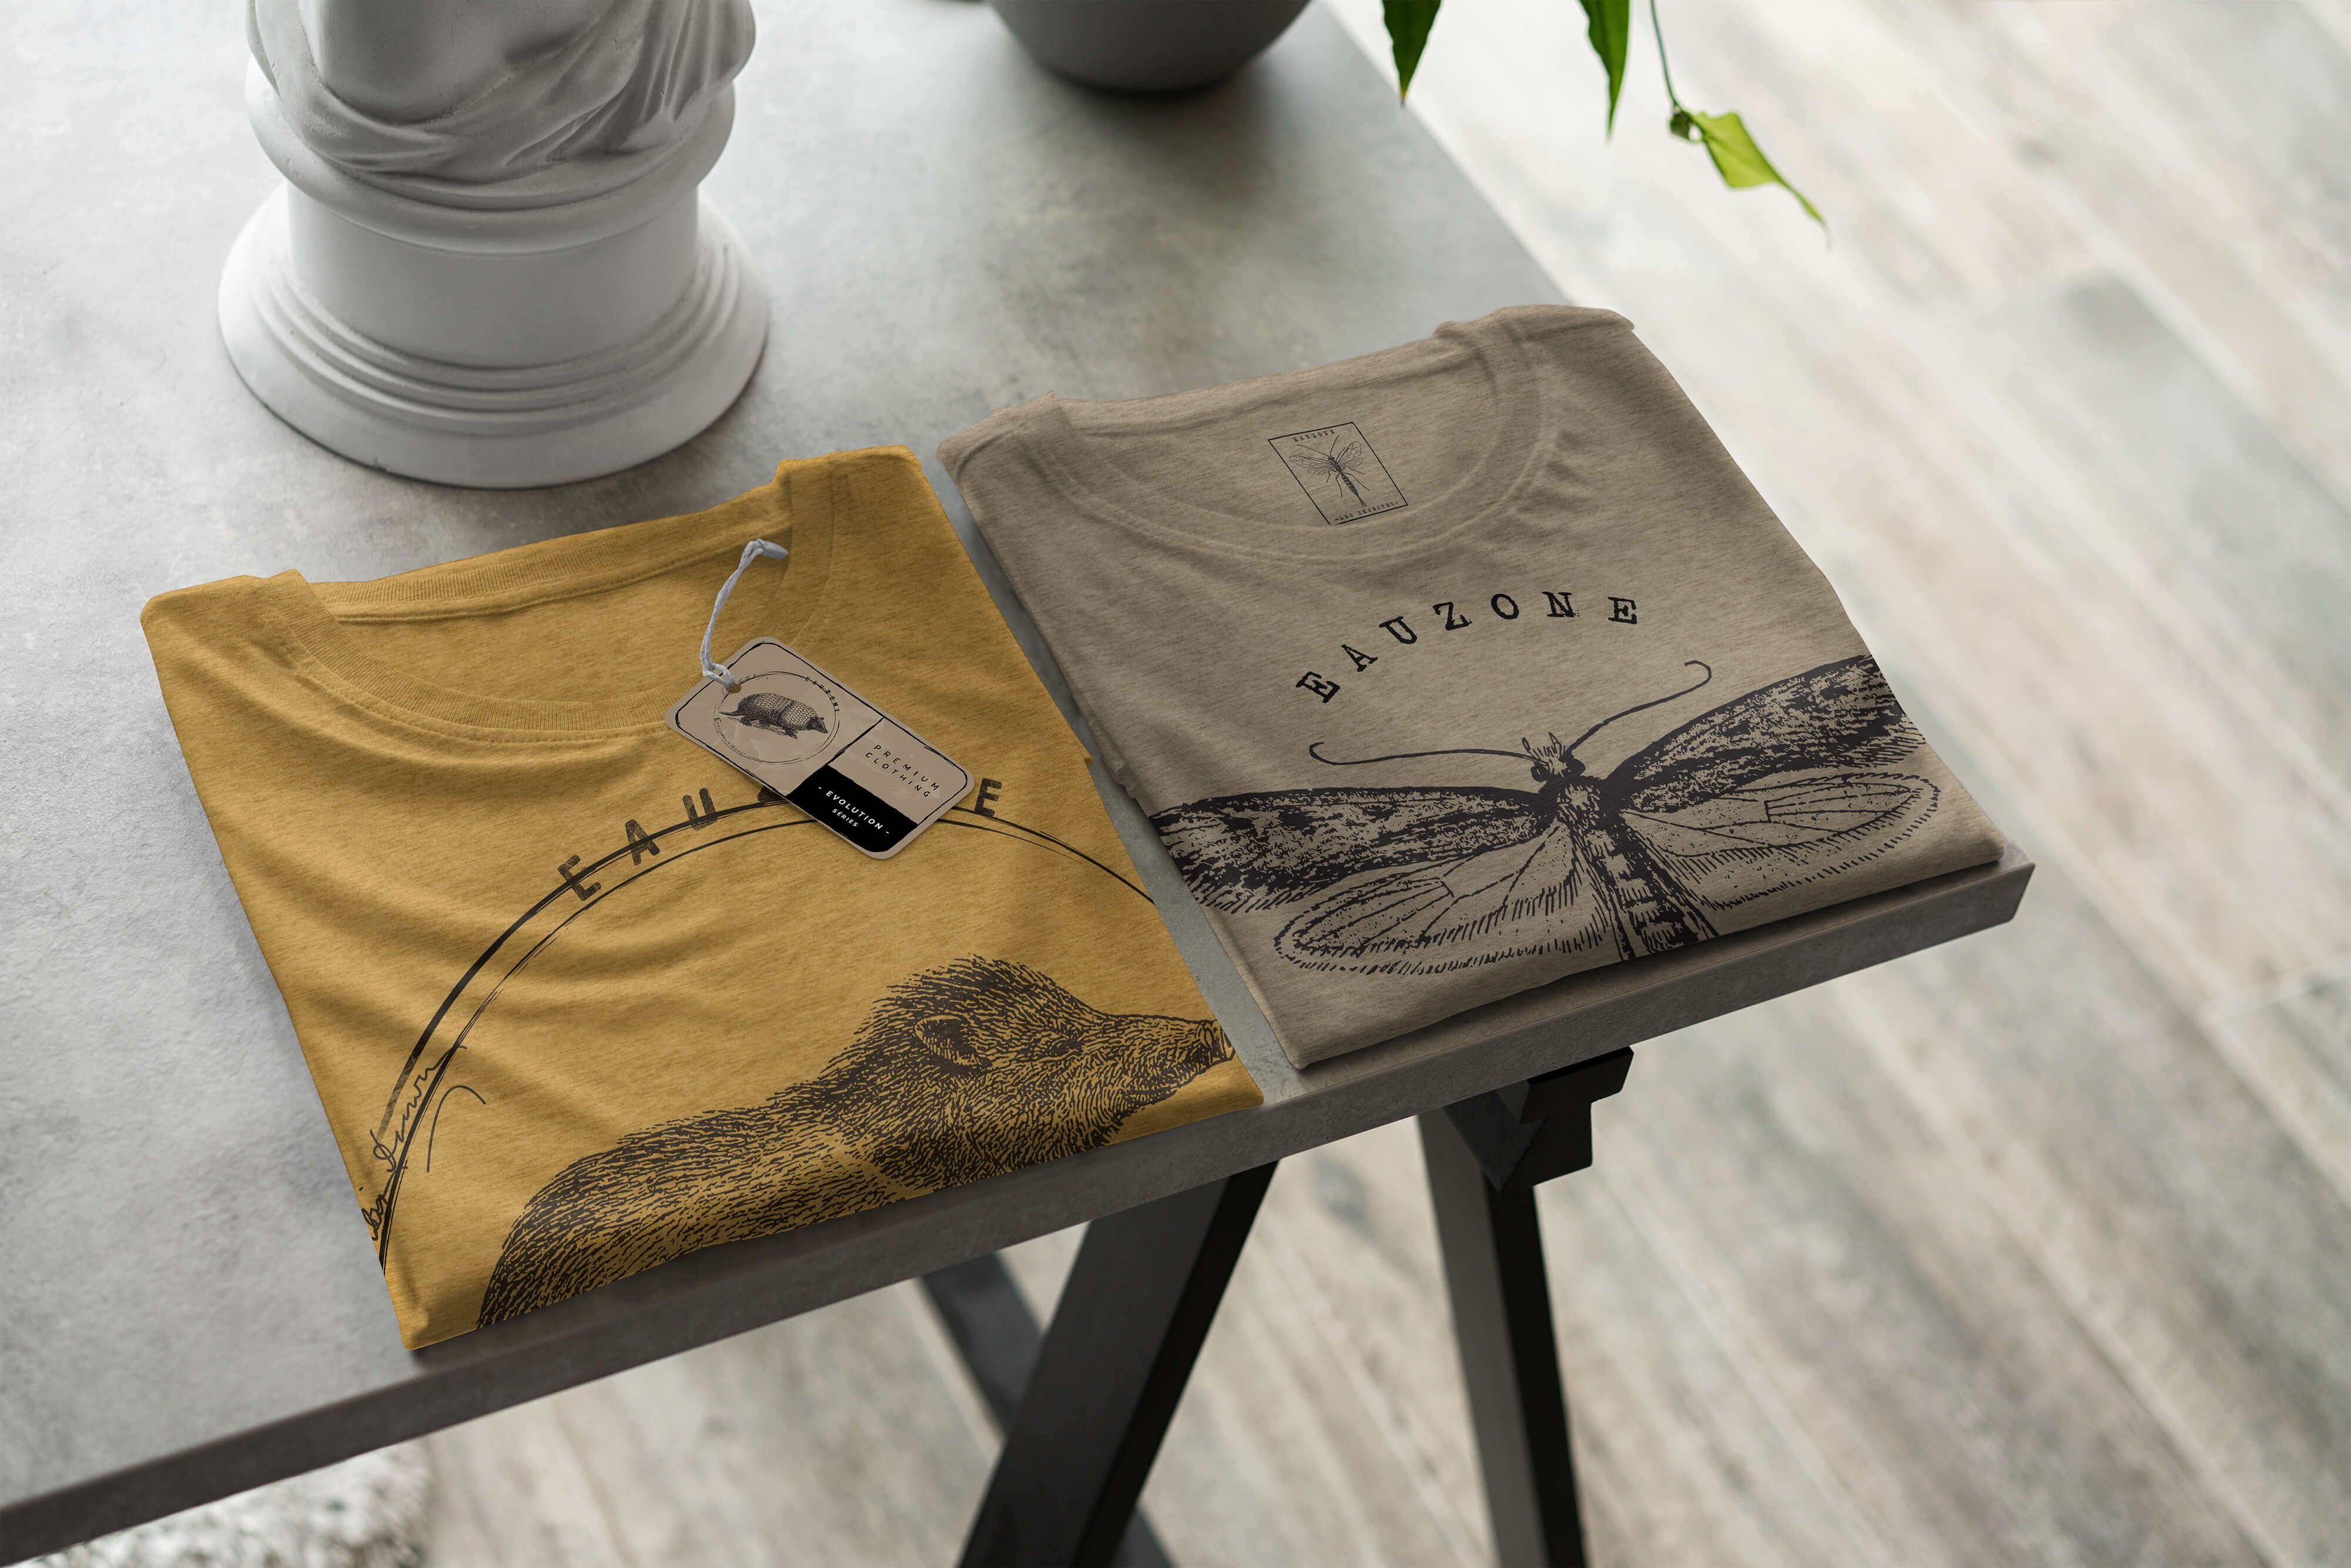 Sinus Art T-Shirt Evolution Antique Gold Wildschwein T-Shirt Herren